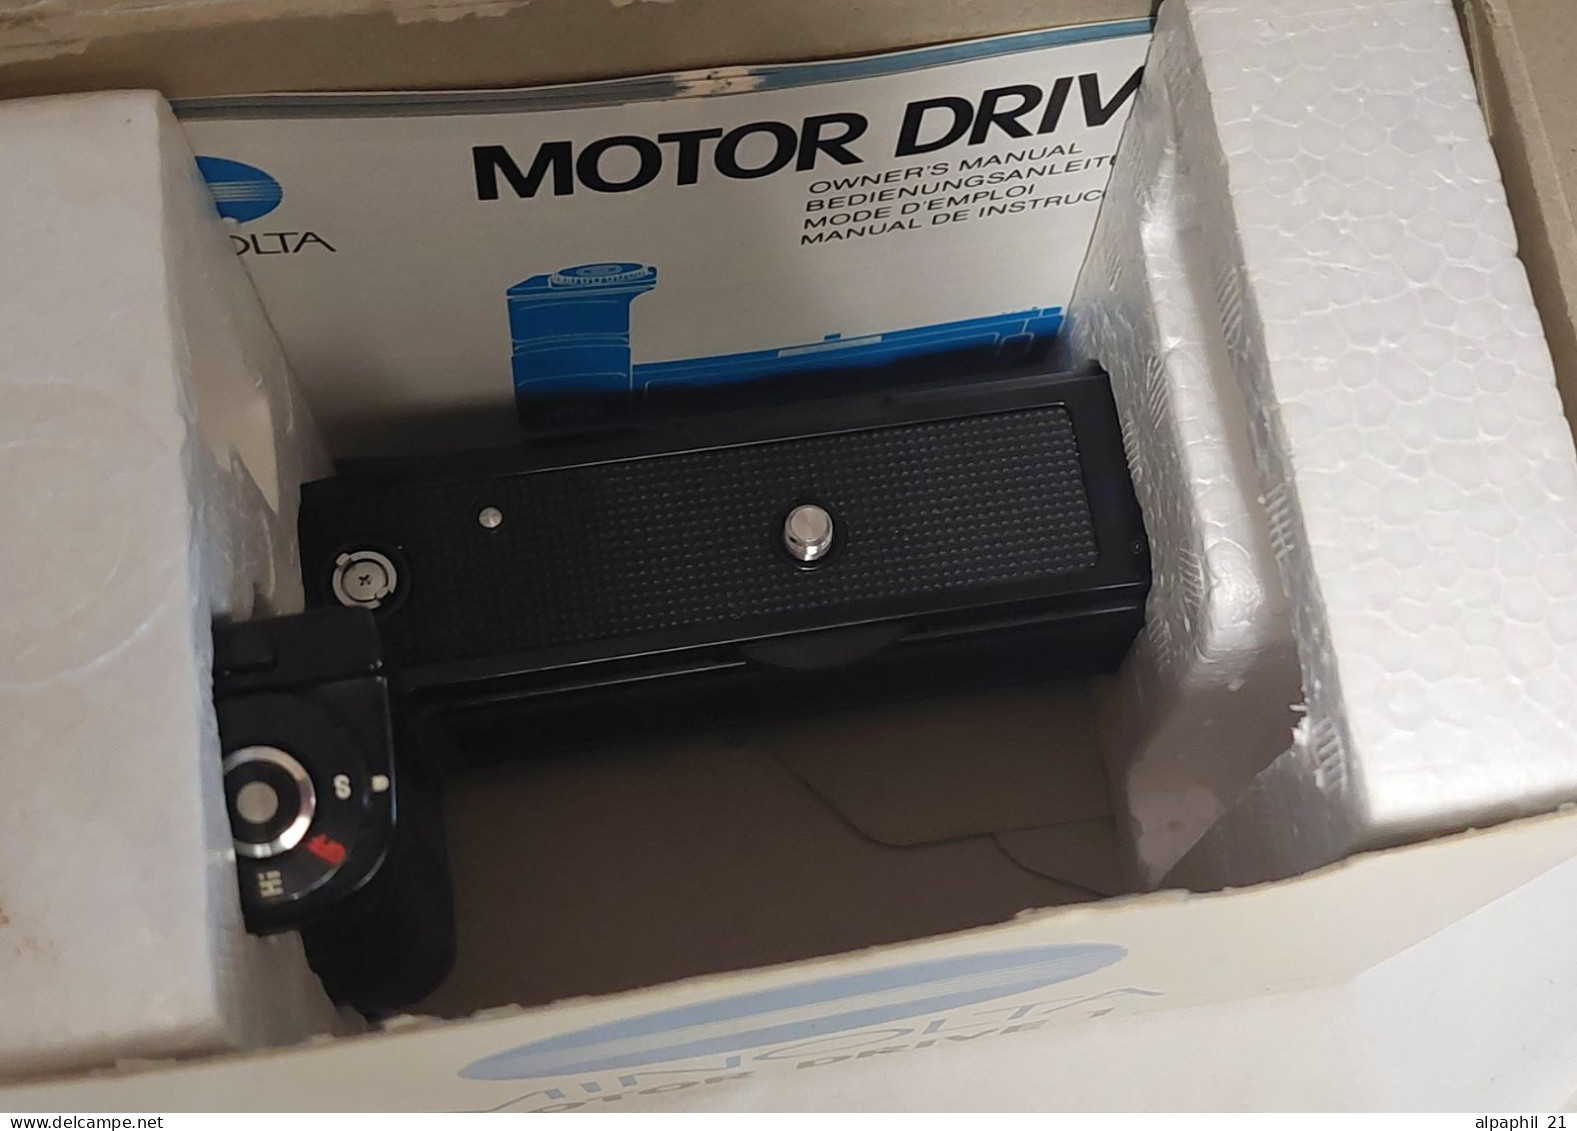 Minolta Motor Drive 1 - Matériel & Accessoires